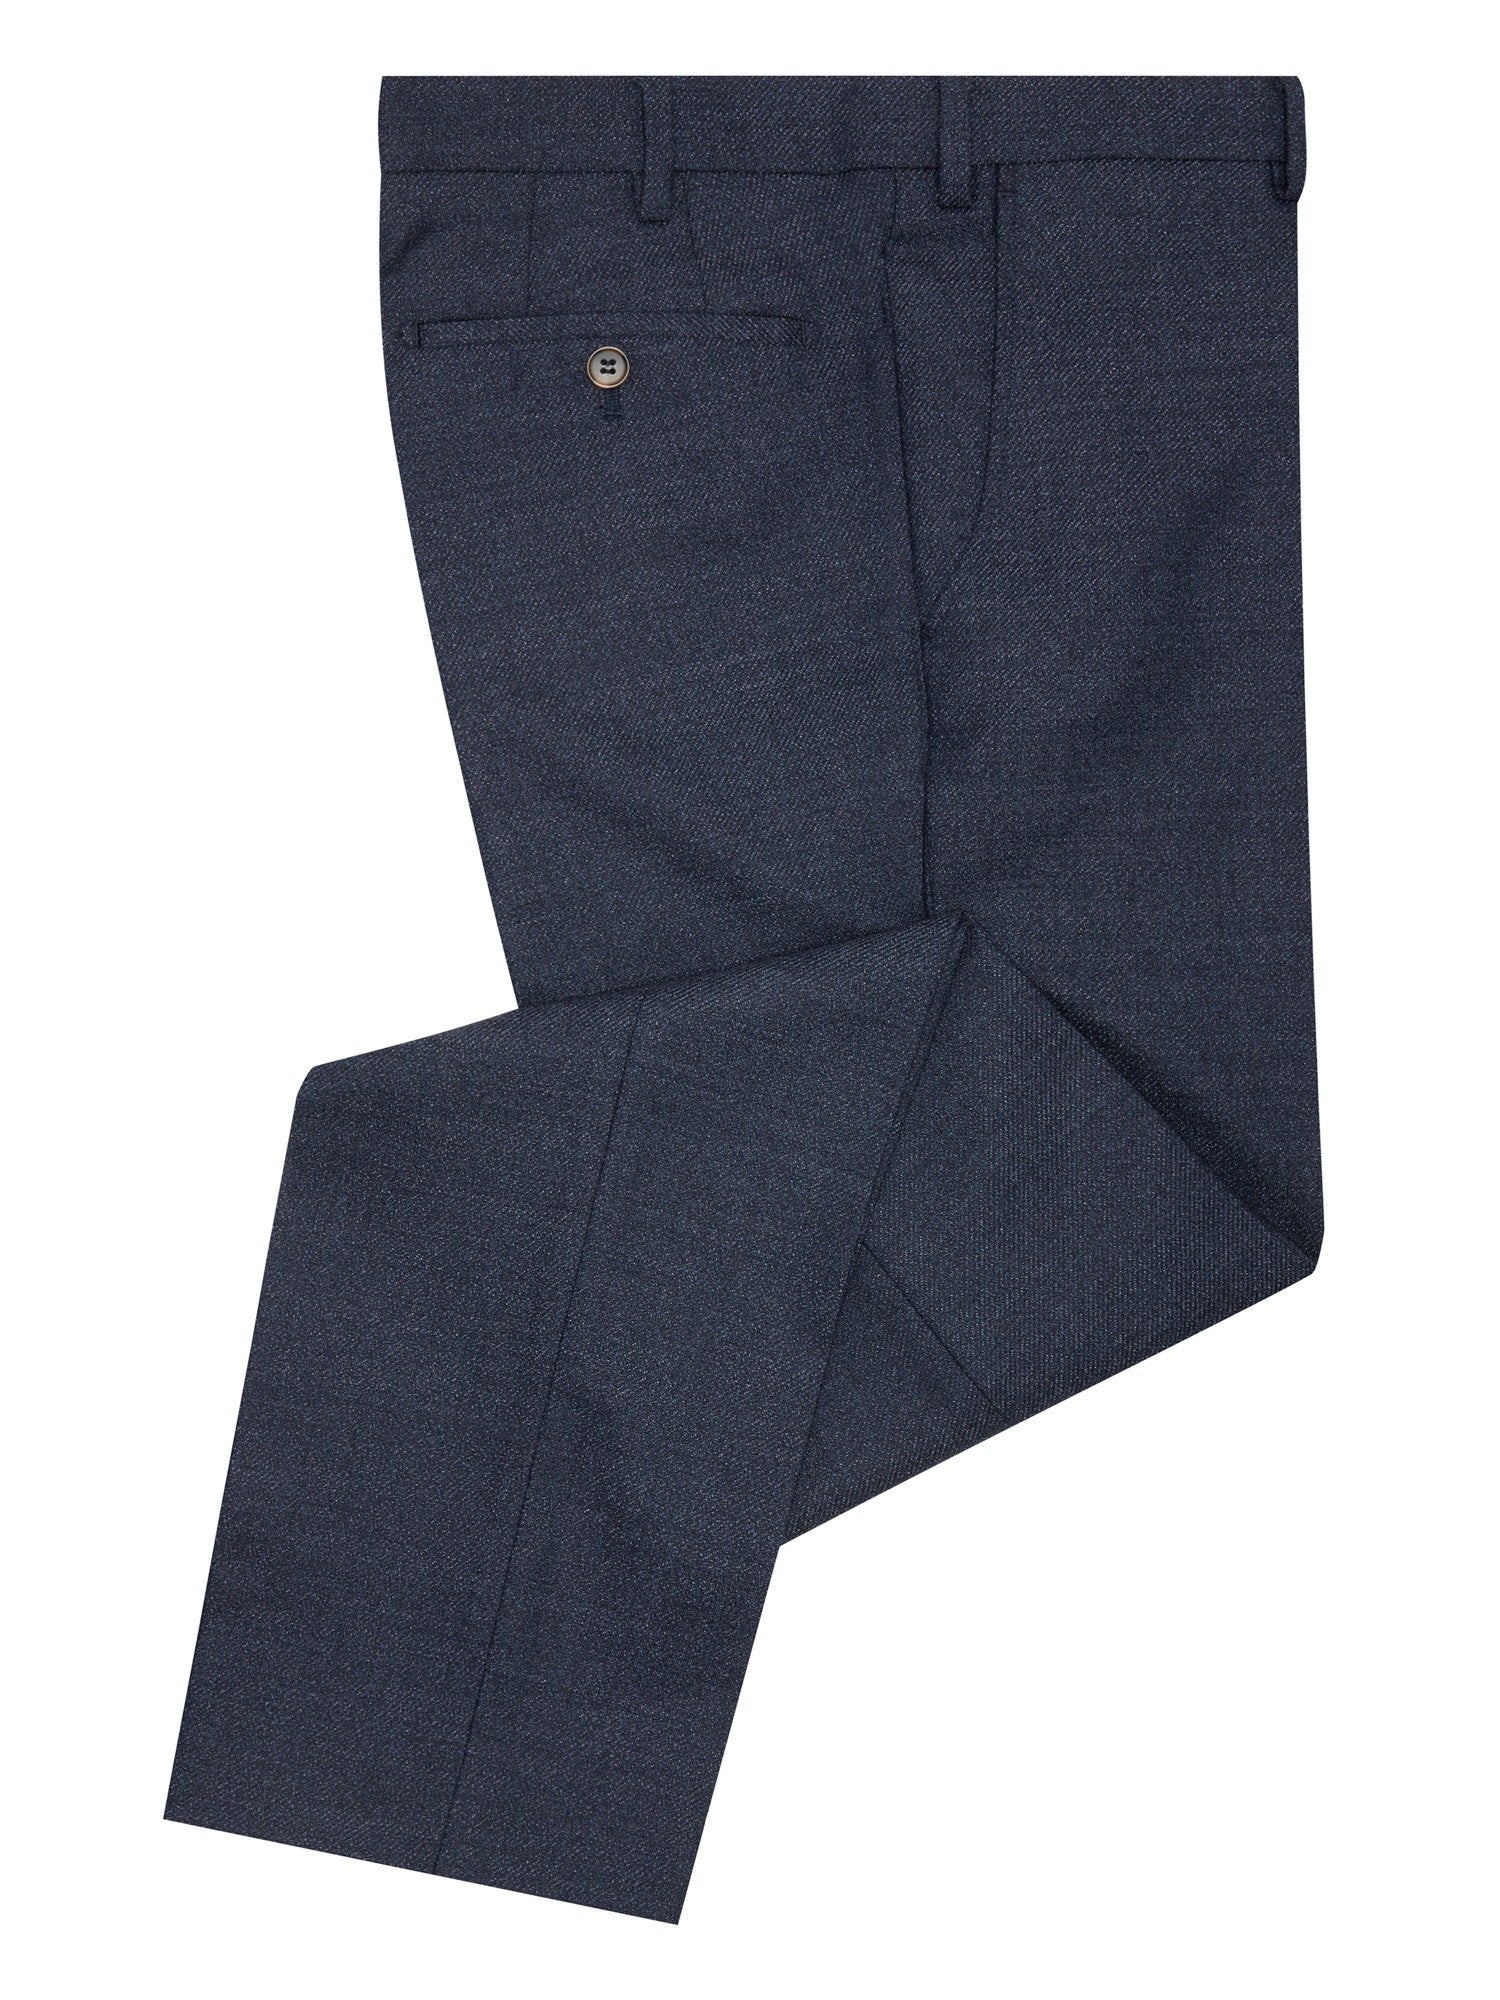 Douglas Blue Mix & Match Suit Trousers Short Length